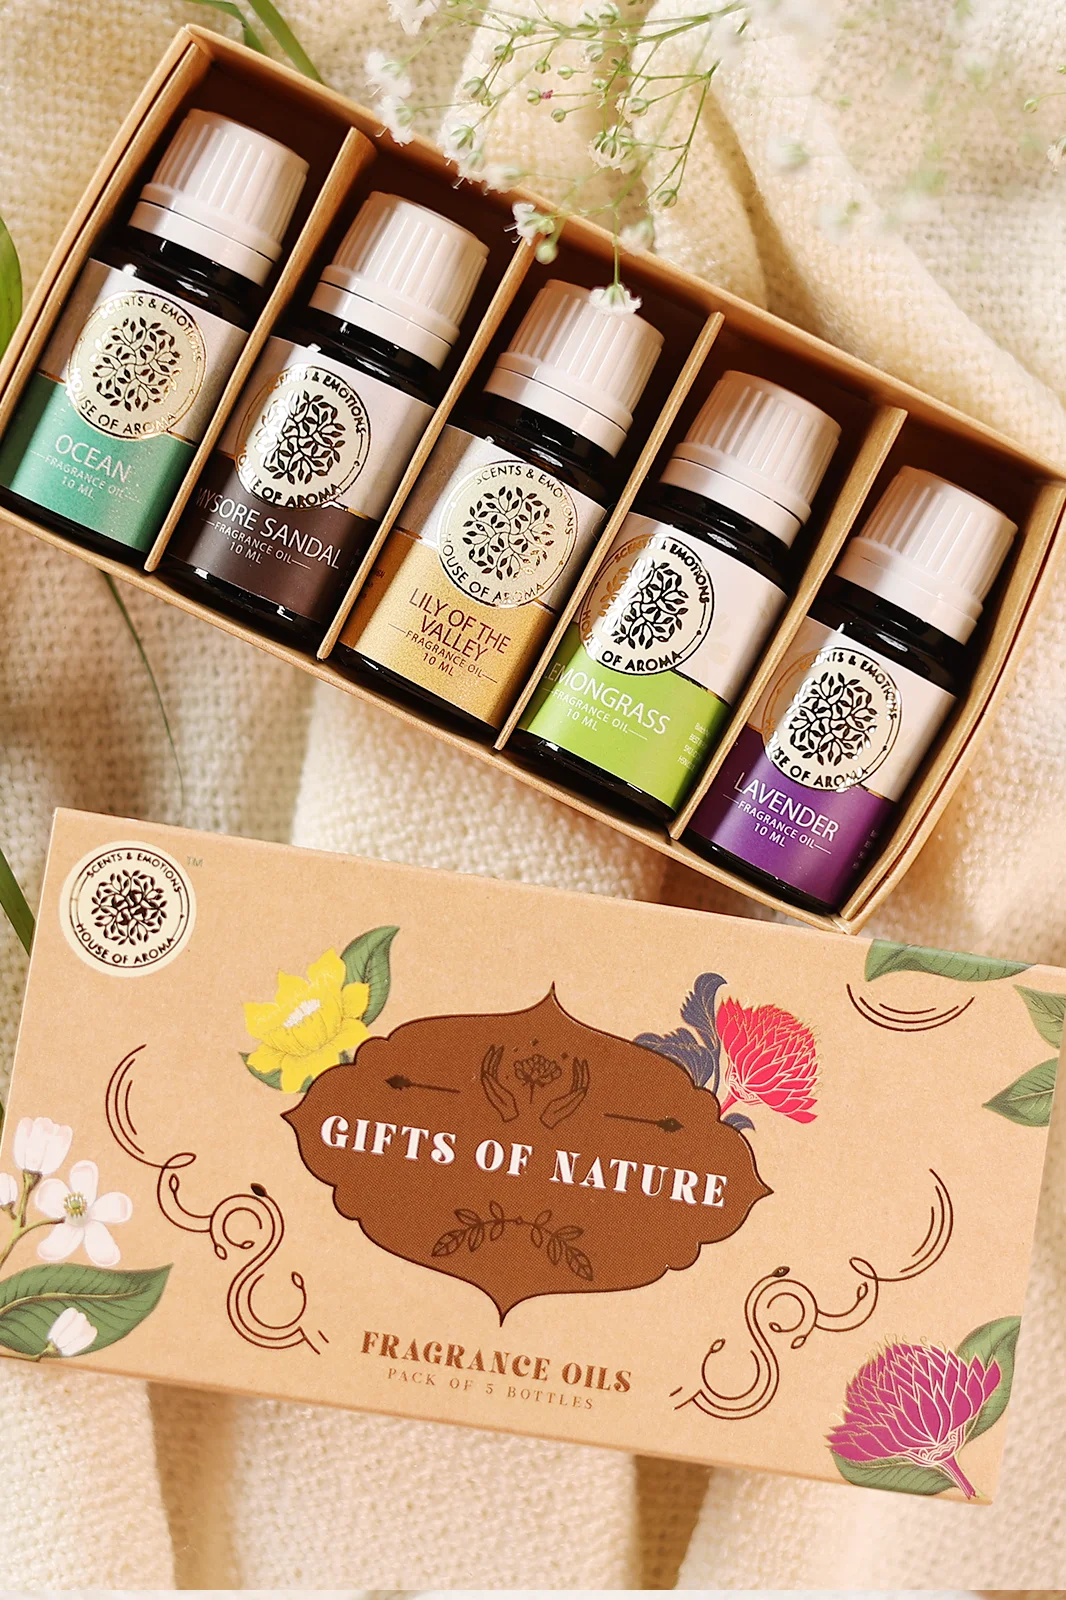 Set of 5 Fragrance Oils Gift Set, gift hamper, synthetic fragrance oils, raksha bandhan gift to sister, gifting ideas for women, mother's day gift ideas, HOA